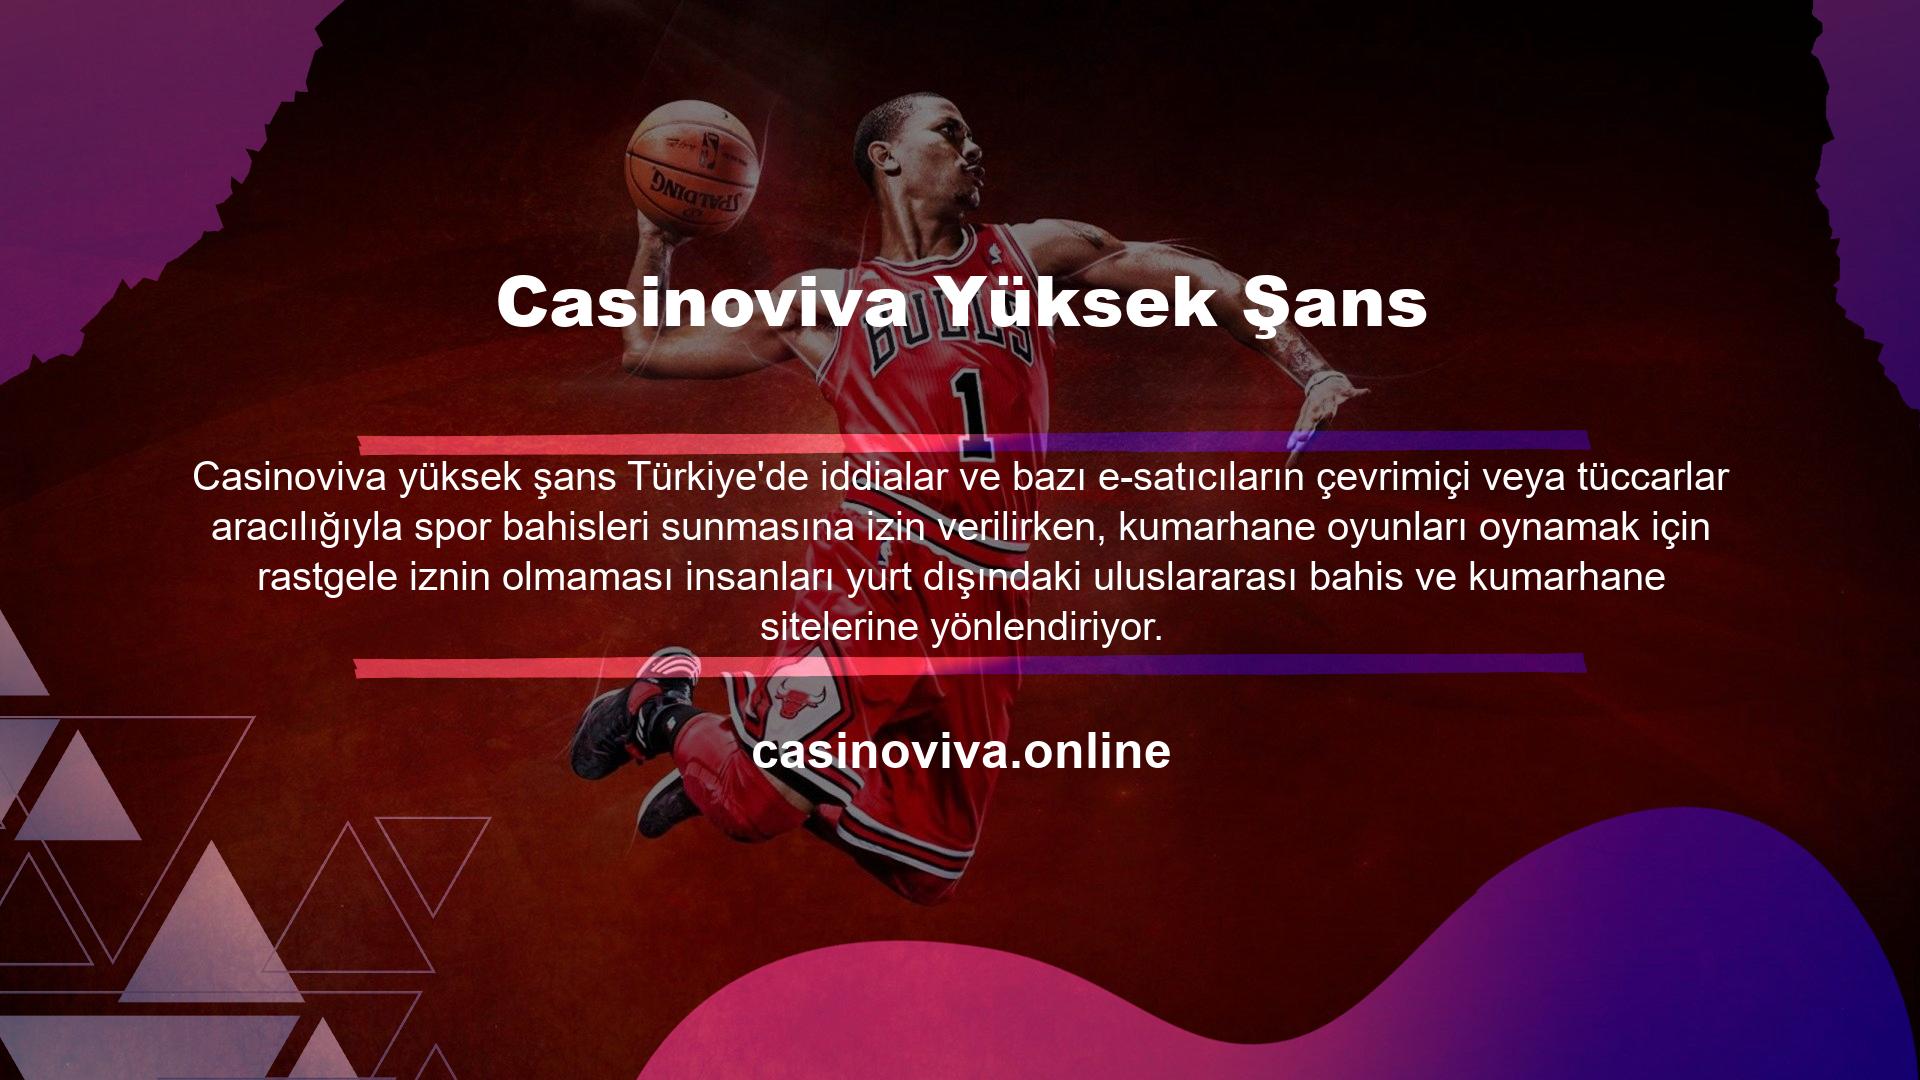 Türkiye'de casino lobilerinin yasaklanmasının ardından birçok casino tutkunu online sitelere yöneldi